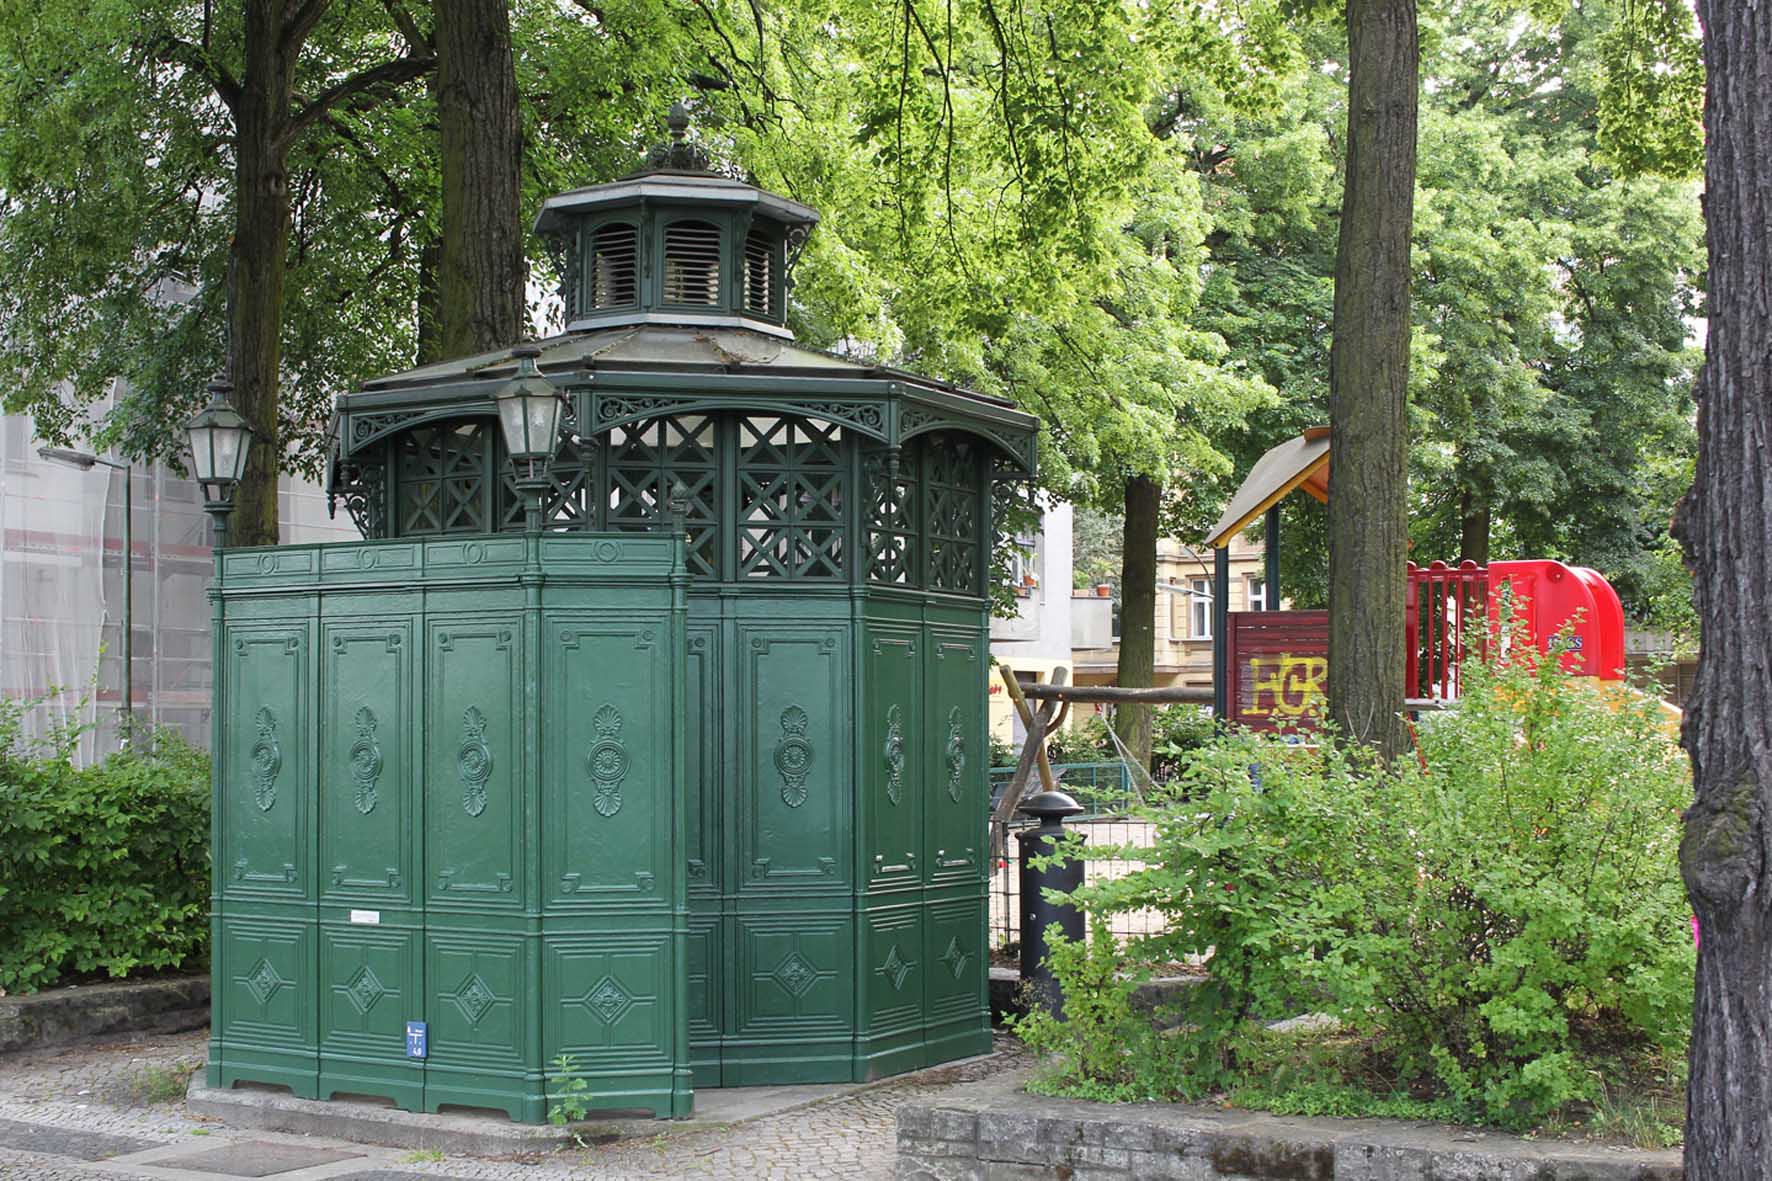 Café Achteck - Leuthener Platz - ein Exemplar von Berlin's klassischen grün-lackierten gusseisernen Bedürfnisanstalten aus dem 19. Jahrhundert